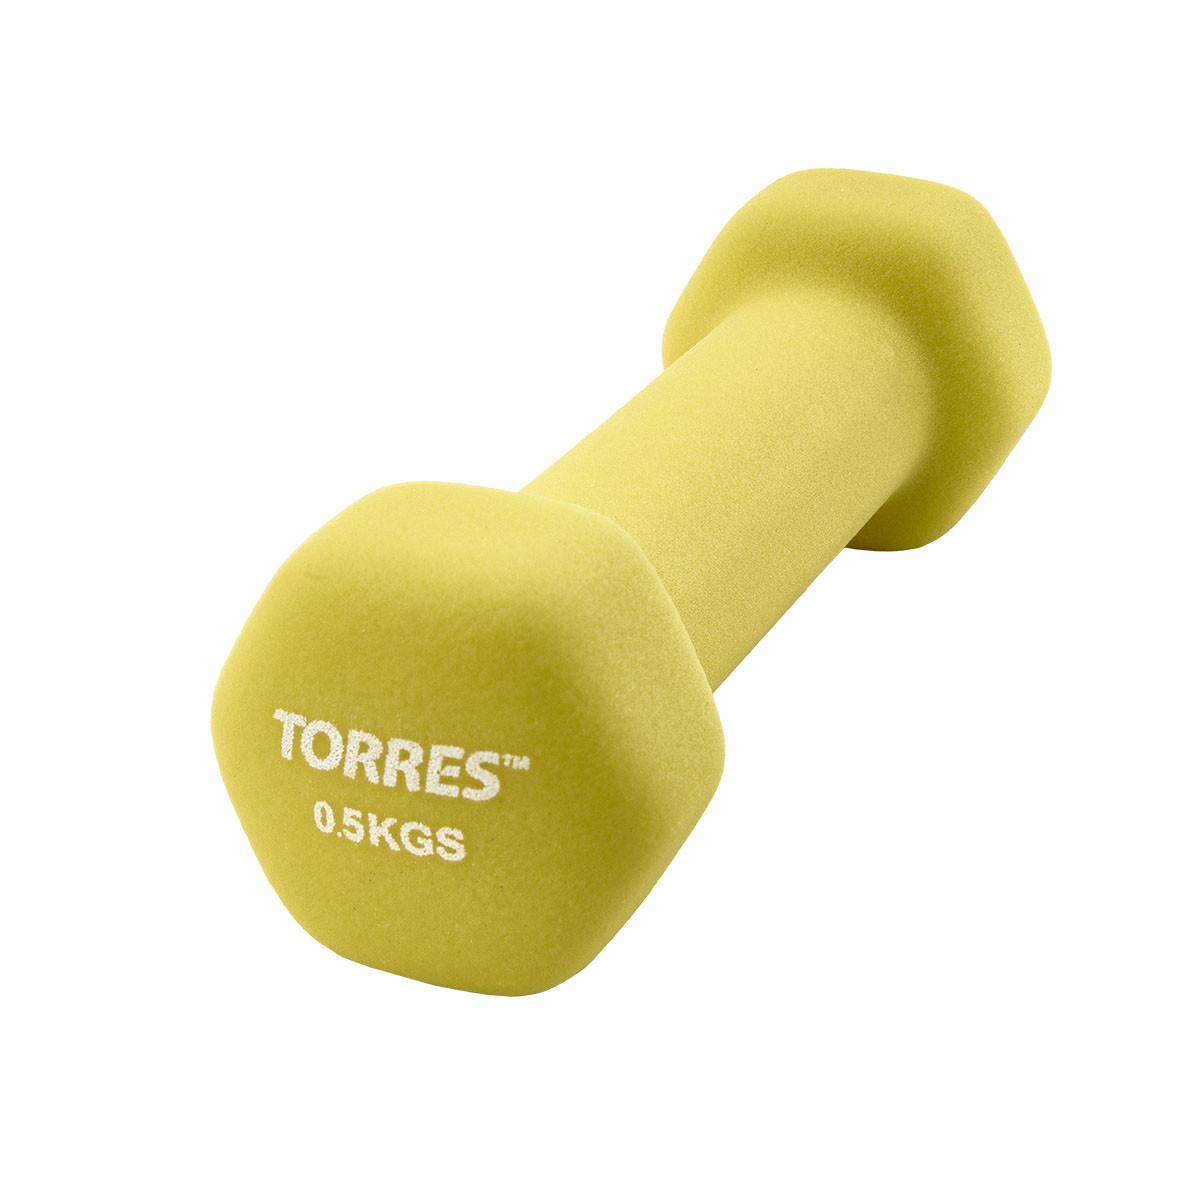 Гантель Torres 0,5 кг PL550105 1200_1200